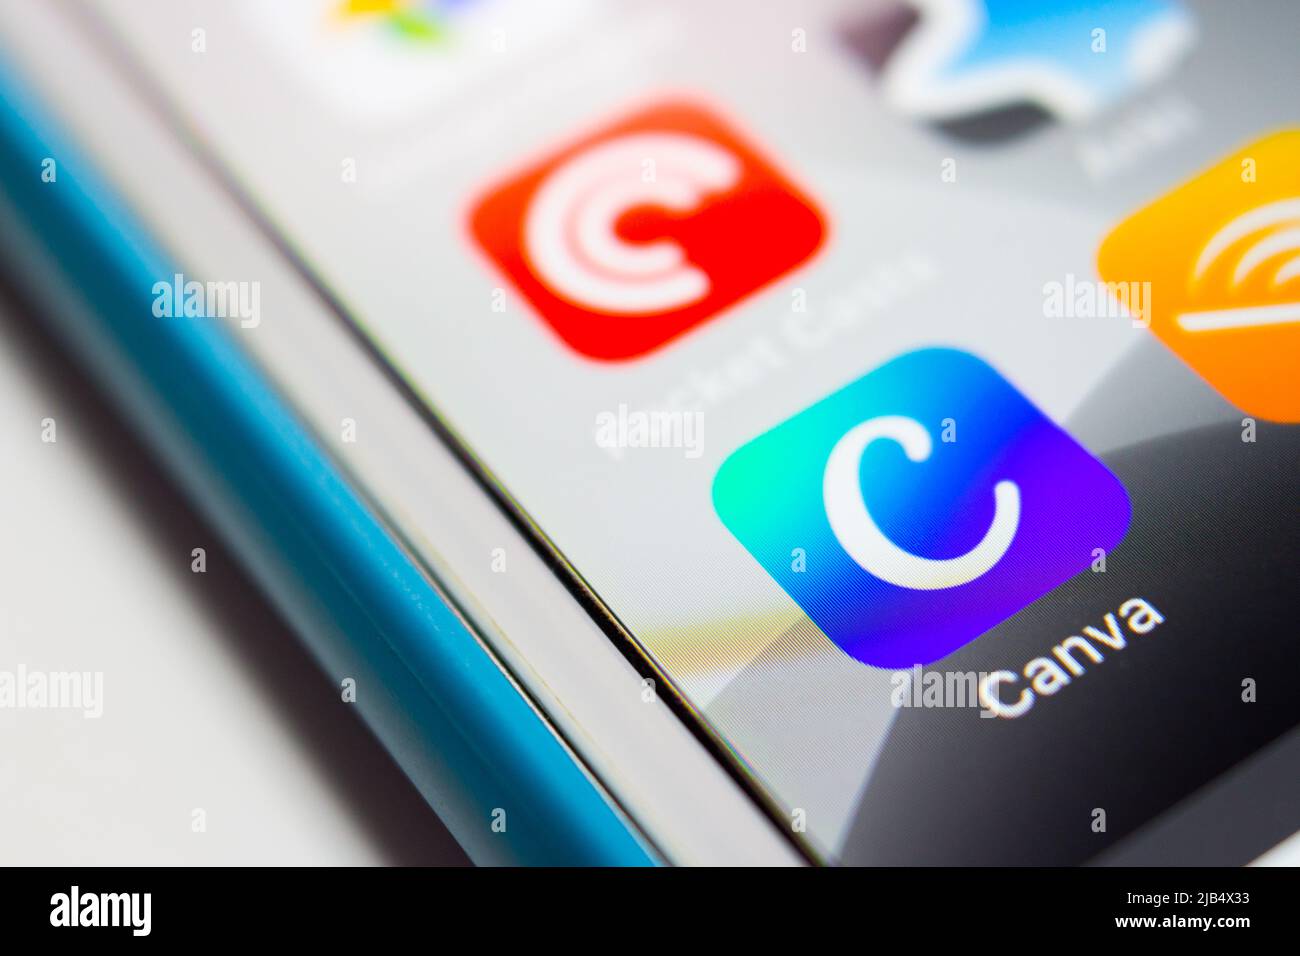 Canva App, eine grafische Design-Plattform, die es Benutzern ermöglicht, Social-Media-Grafiken, Präsentationen, Poster und andere visuelle Inhalte auf dem iPhone zu erstellen. Stockfoto